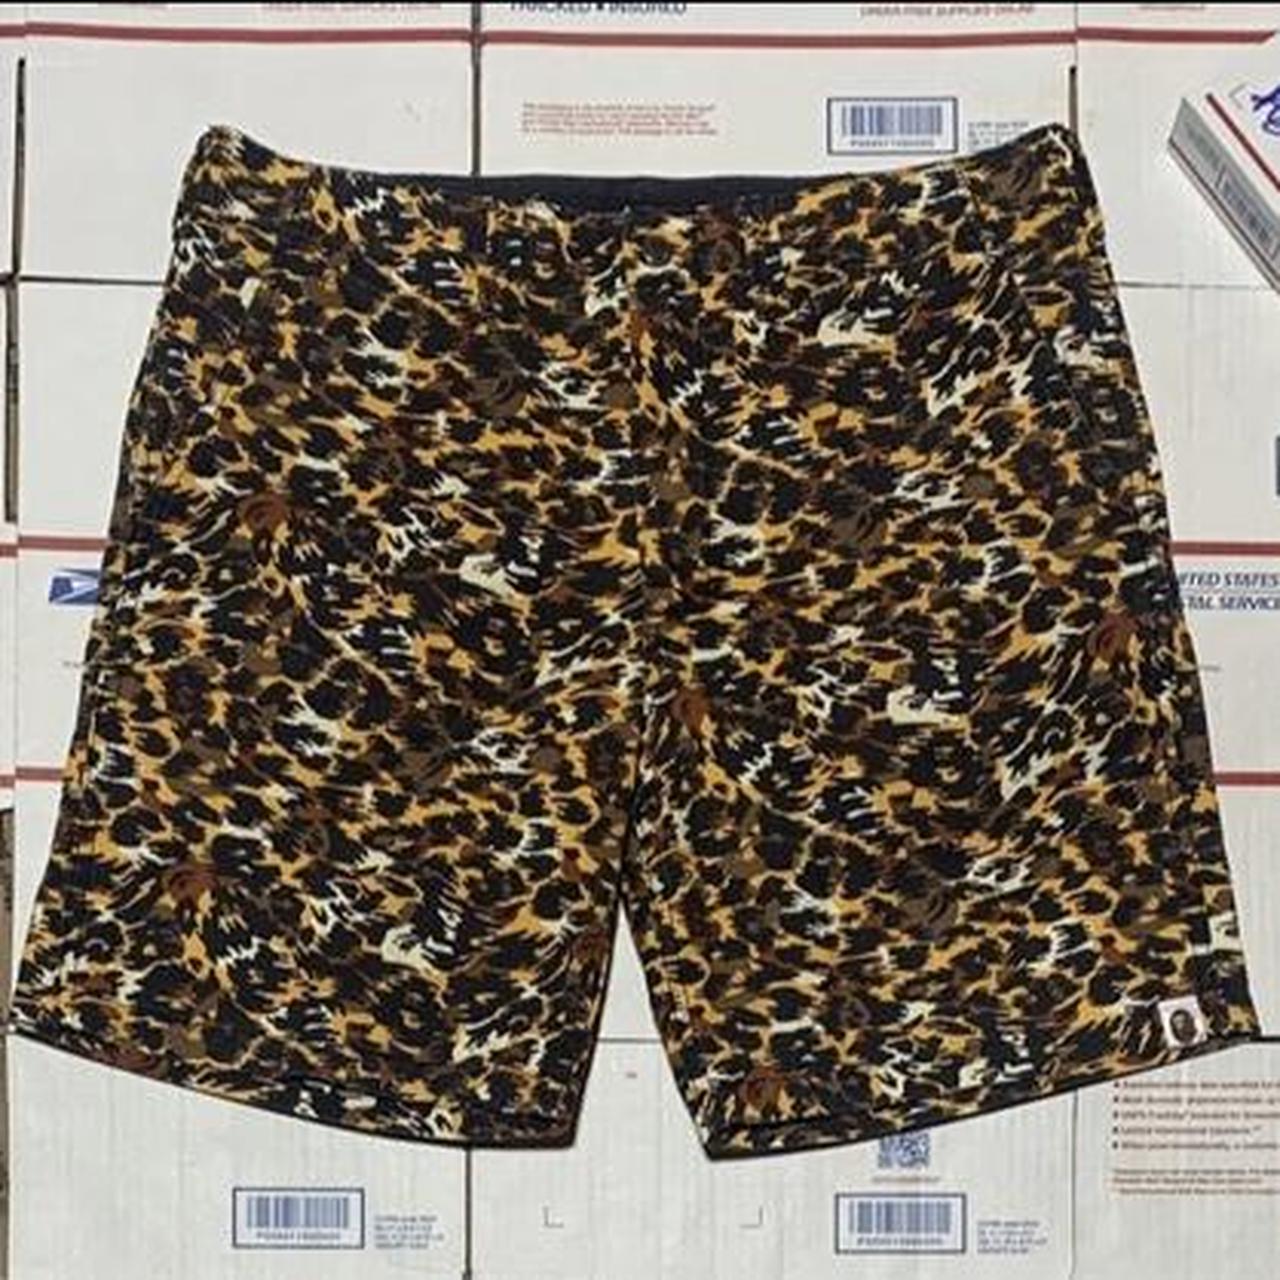 Bape camo shorts Size M 32 Waist Release in early... - Depop